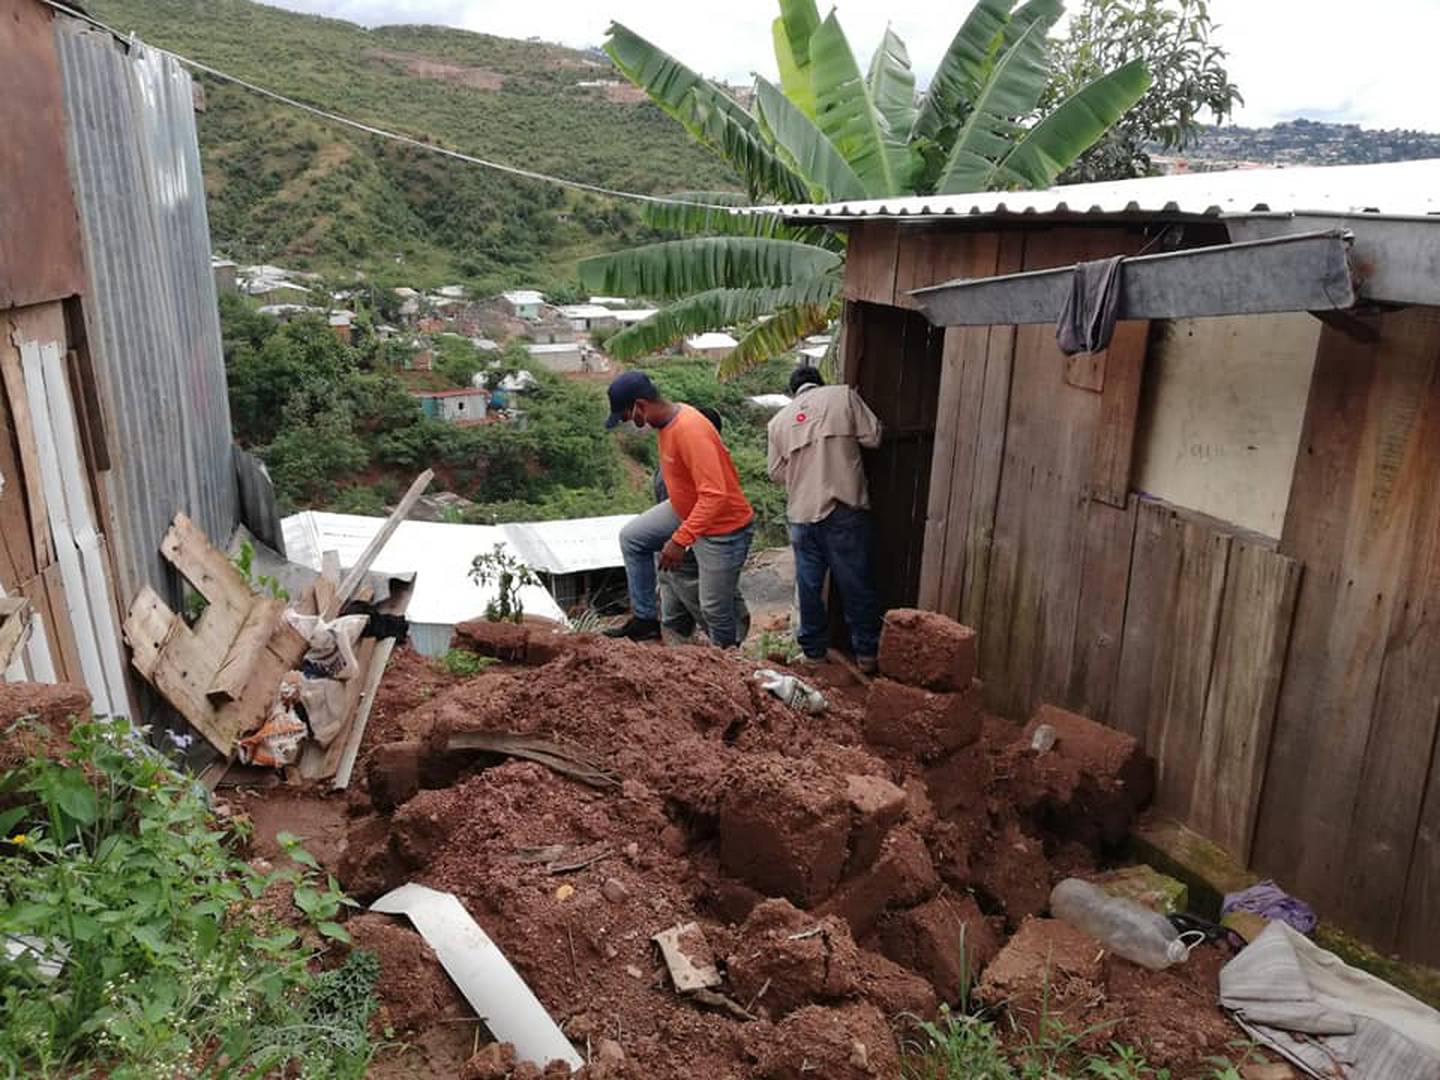 Los huracanes Eta y Iota de noviembre de 2020 dejaron más de 200 personas muertas en Centroamérica. En la imagen, personal de Copeco constata daños en Tegucigalpa a causa de esos desastres.